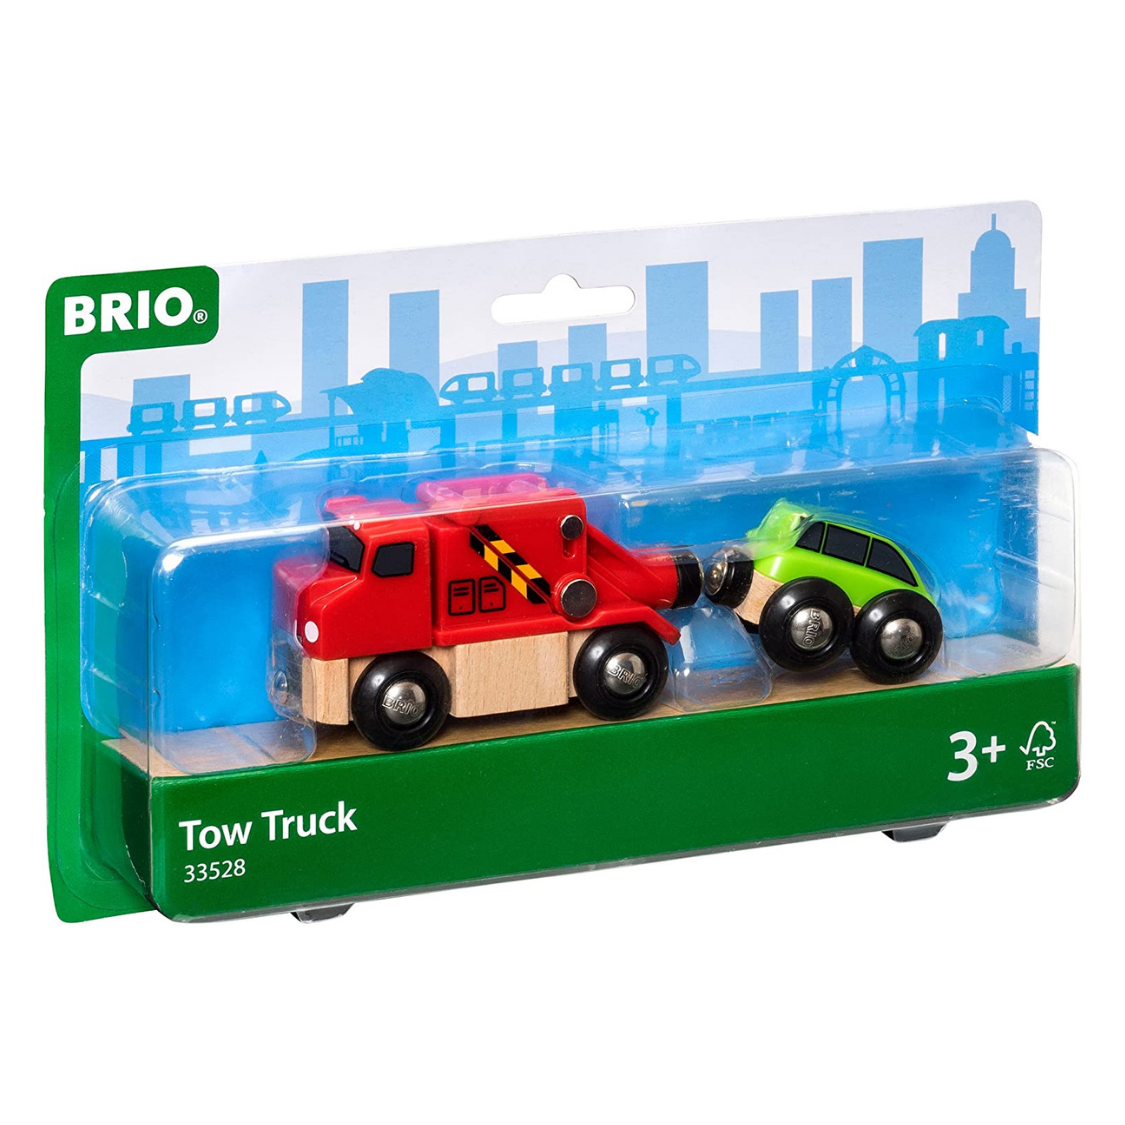 BRIO 33528 Tow Truck